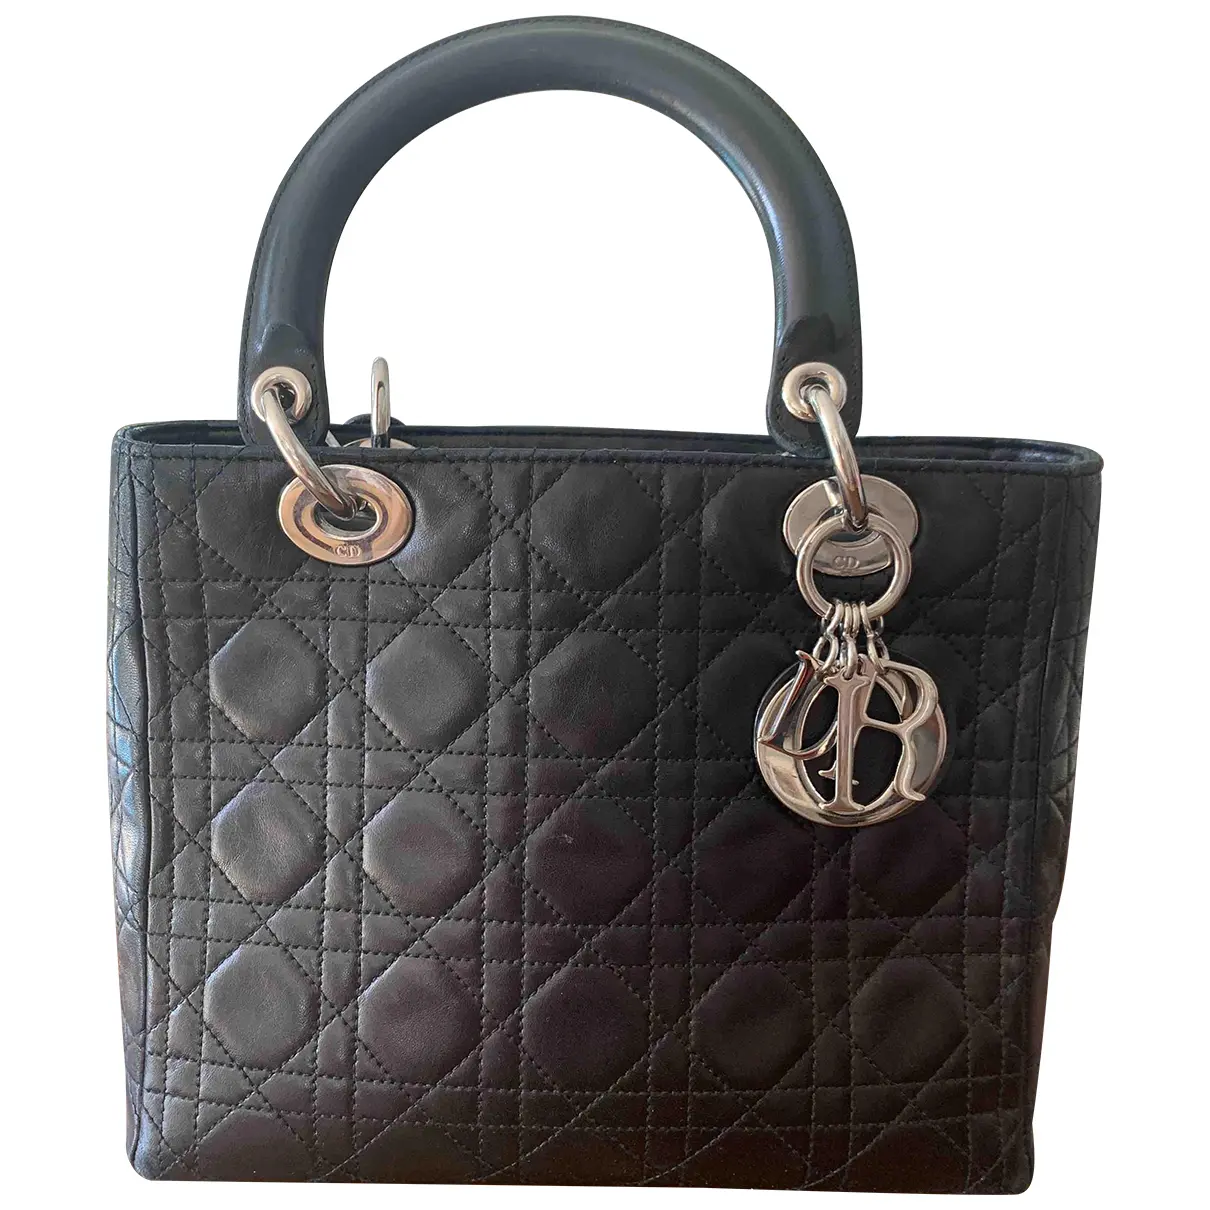 Lady Dior leather handbag Dior - Vintage